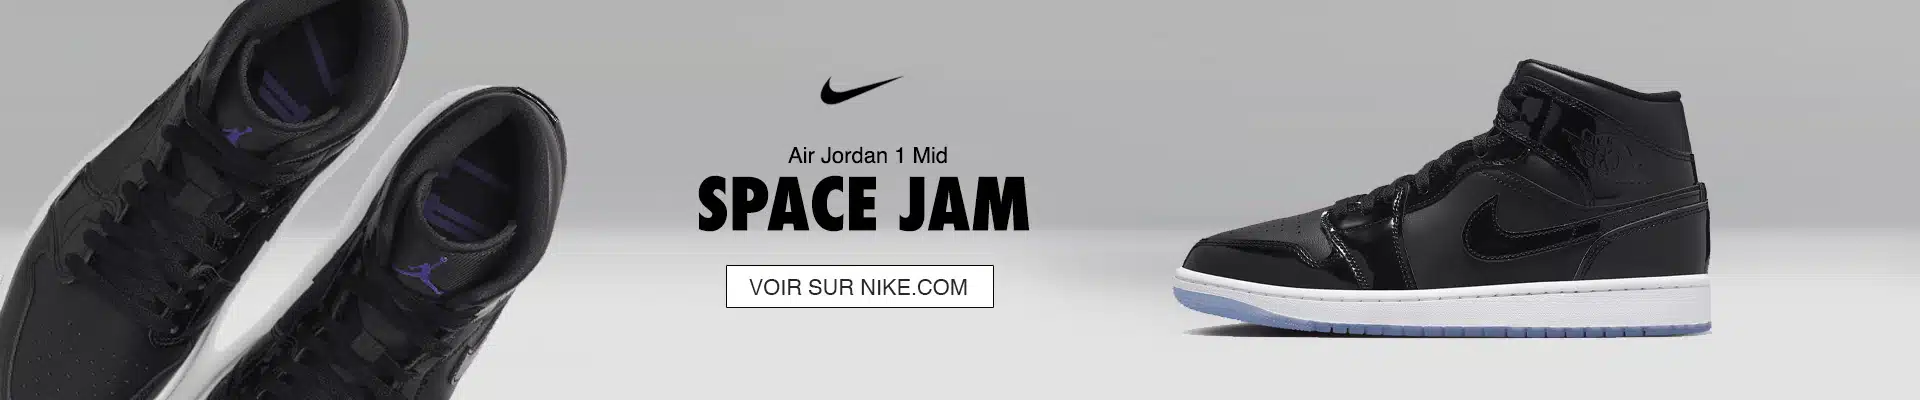 Air Jordan 1 Mid Space Jam